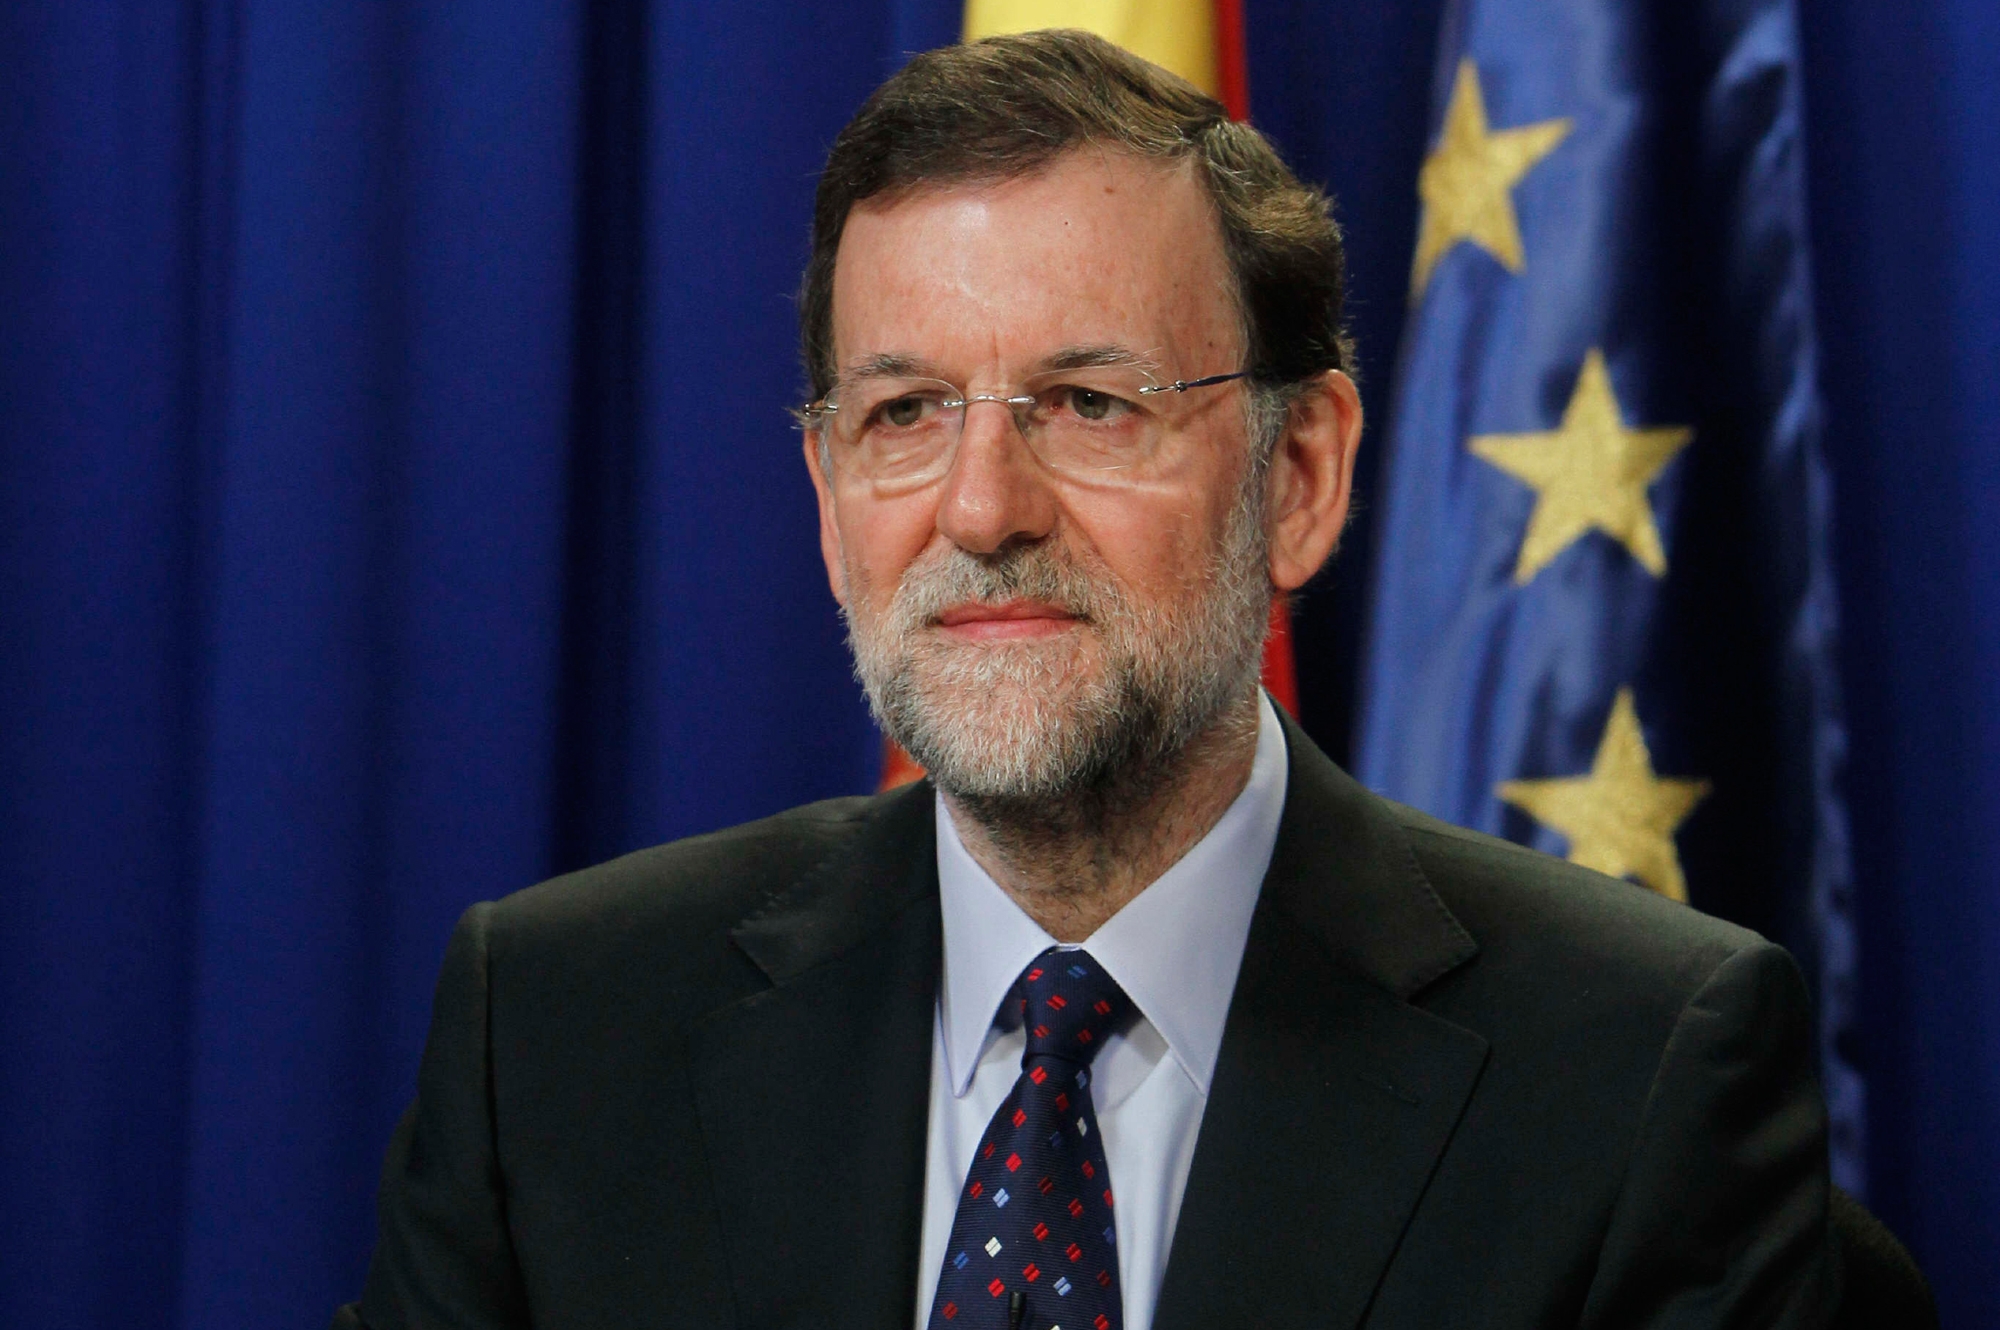 "Паис": Мадрид ще запази прякото си управление над Каталуня